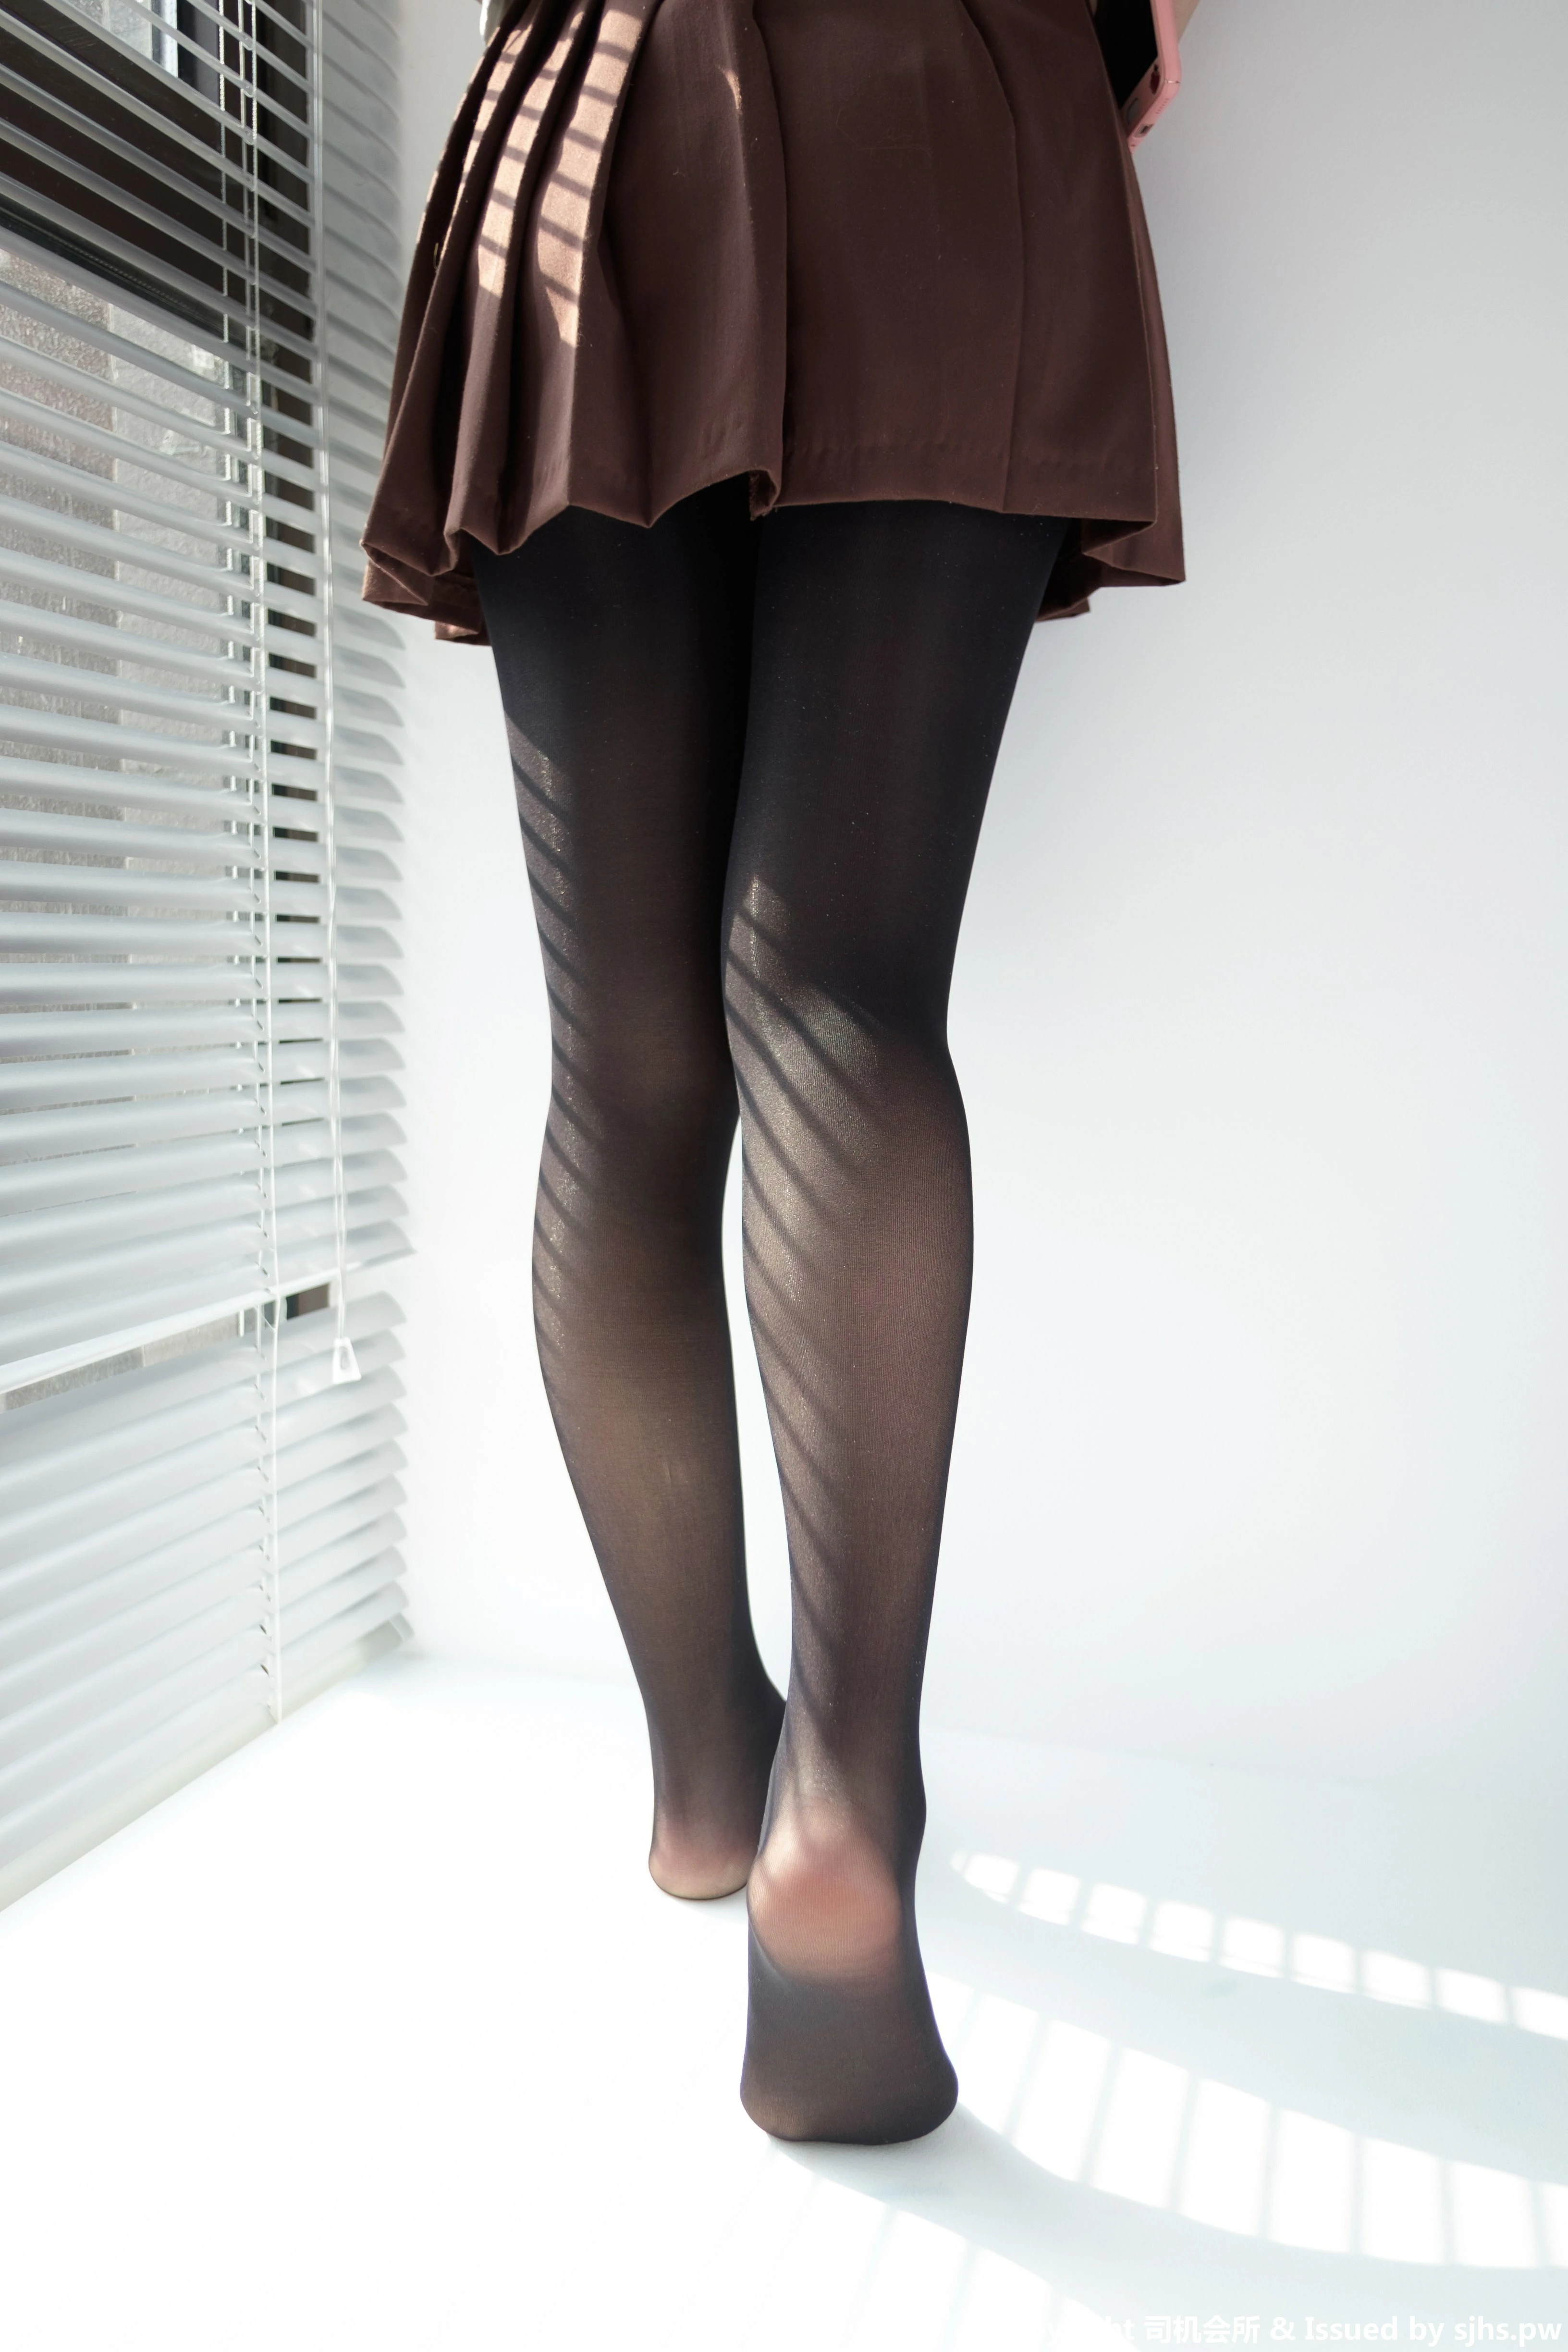 [森萝财团]BETA-011 性感小萝莉 棕色高中女生制服与短裙加黑色丝袜美腿玉足私房写真集,